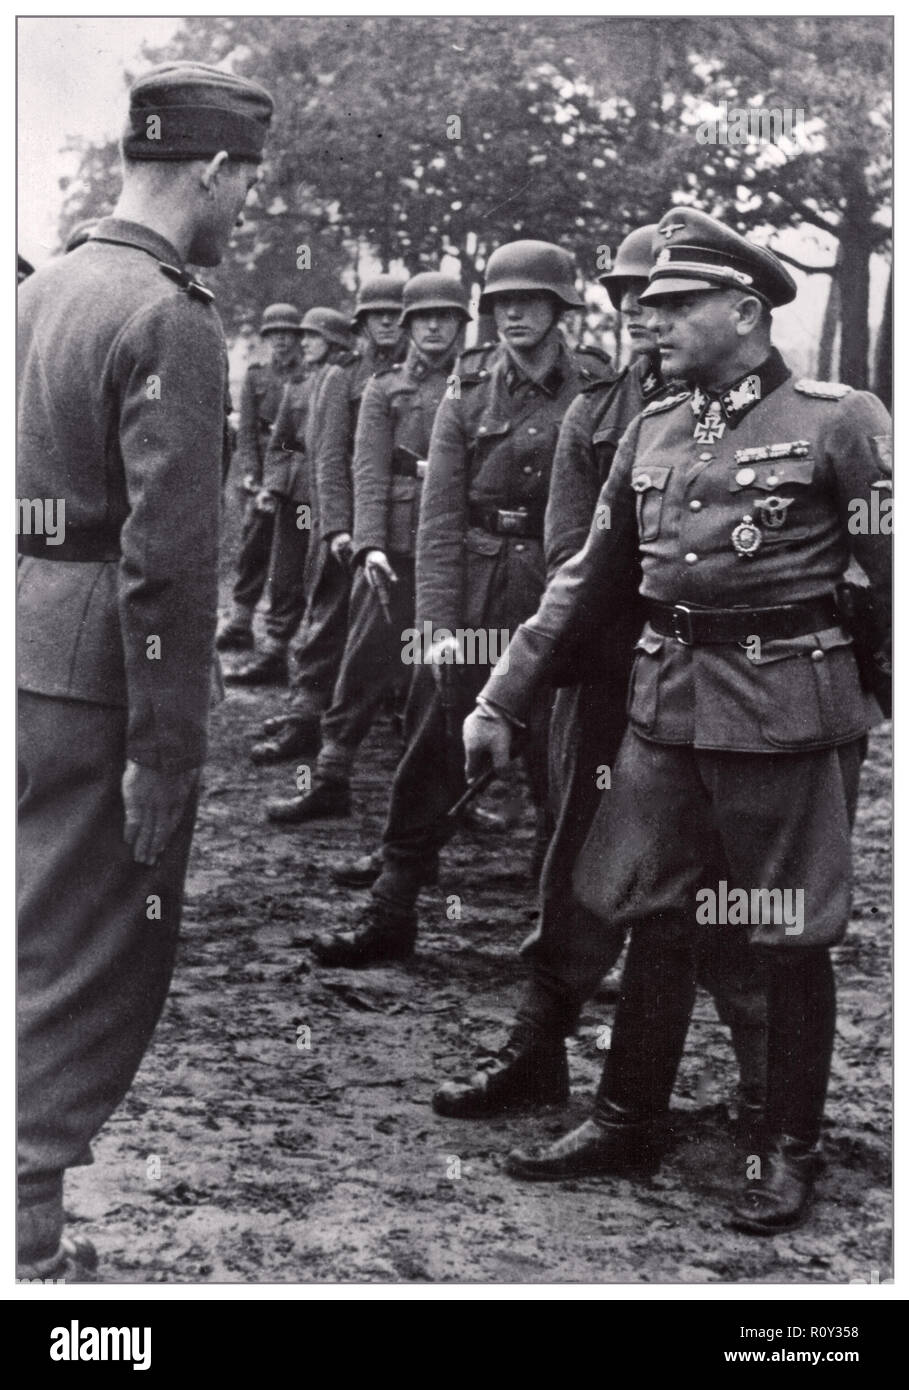 WW2 'Sepp Dietrich' Oberst-Gruppenführer Waffen SS (bei Nürnberger Prozessen wegen Kriegsverbrechen für schuldig befunden) trainiert einen bunten Haufen junger Wehrmachtseinheiten 1943 Stockfoto